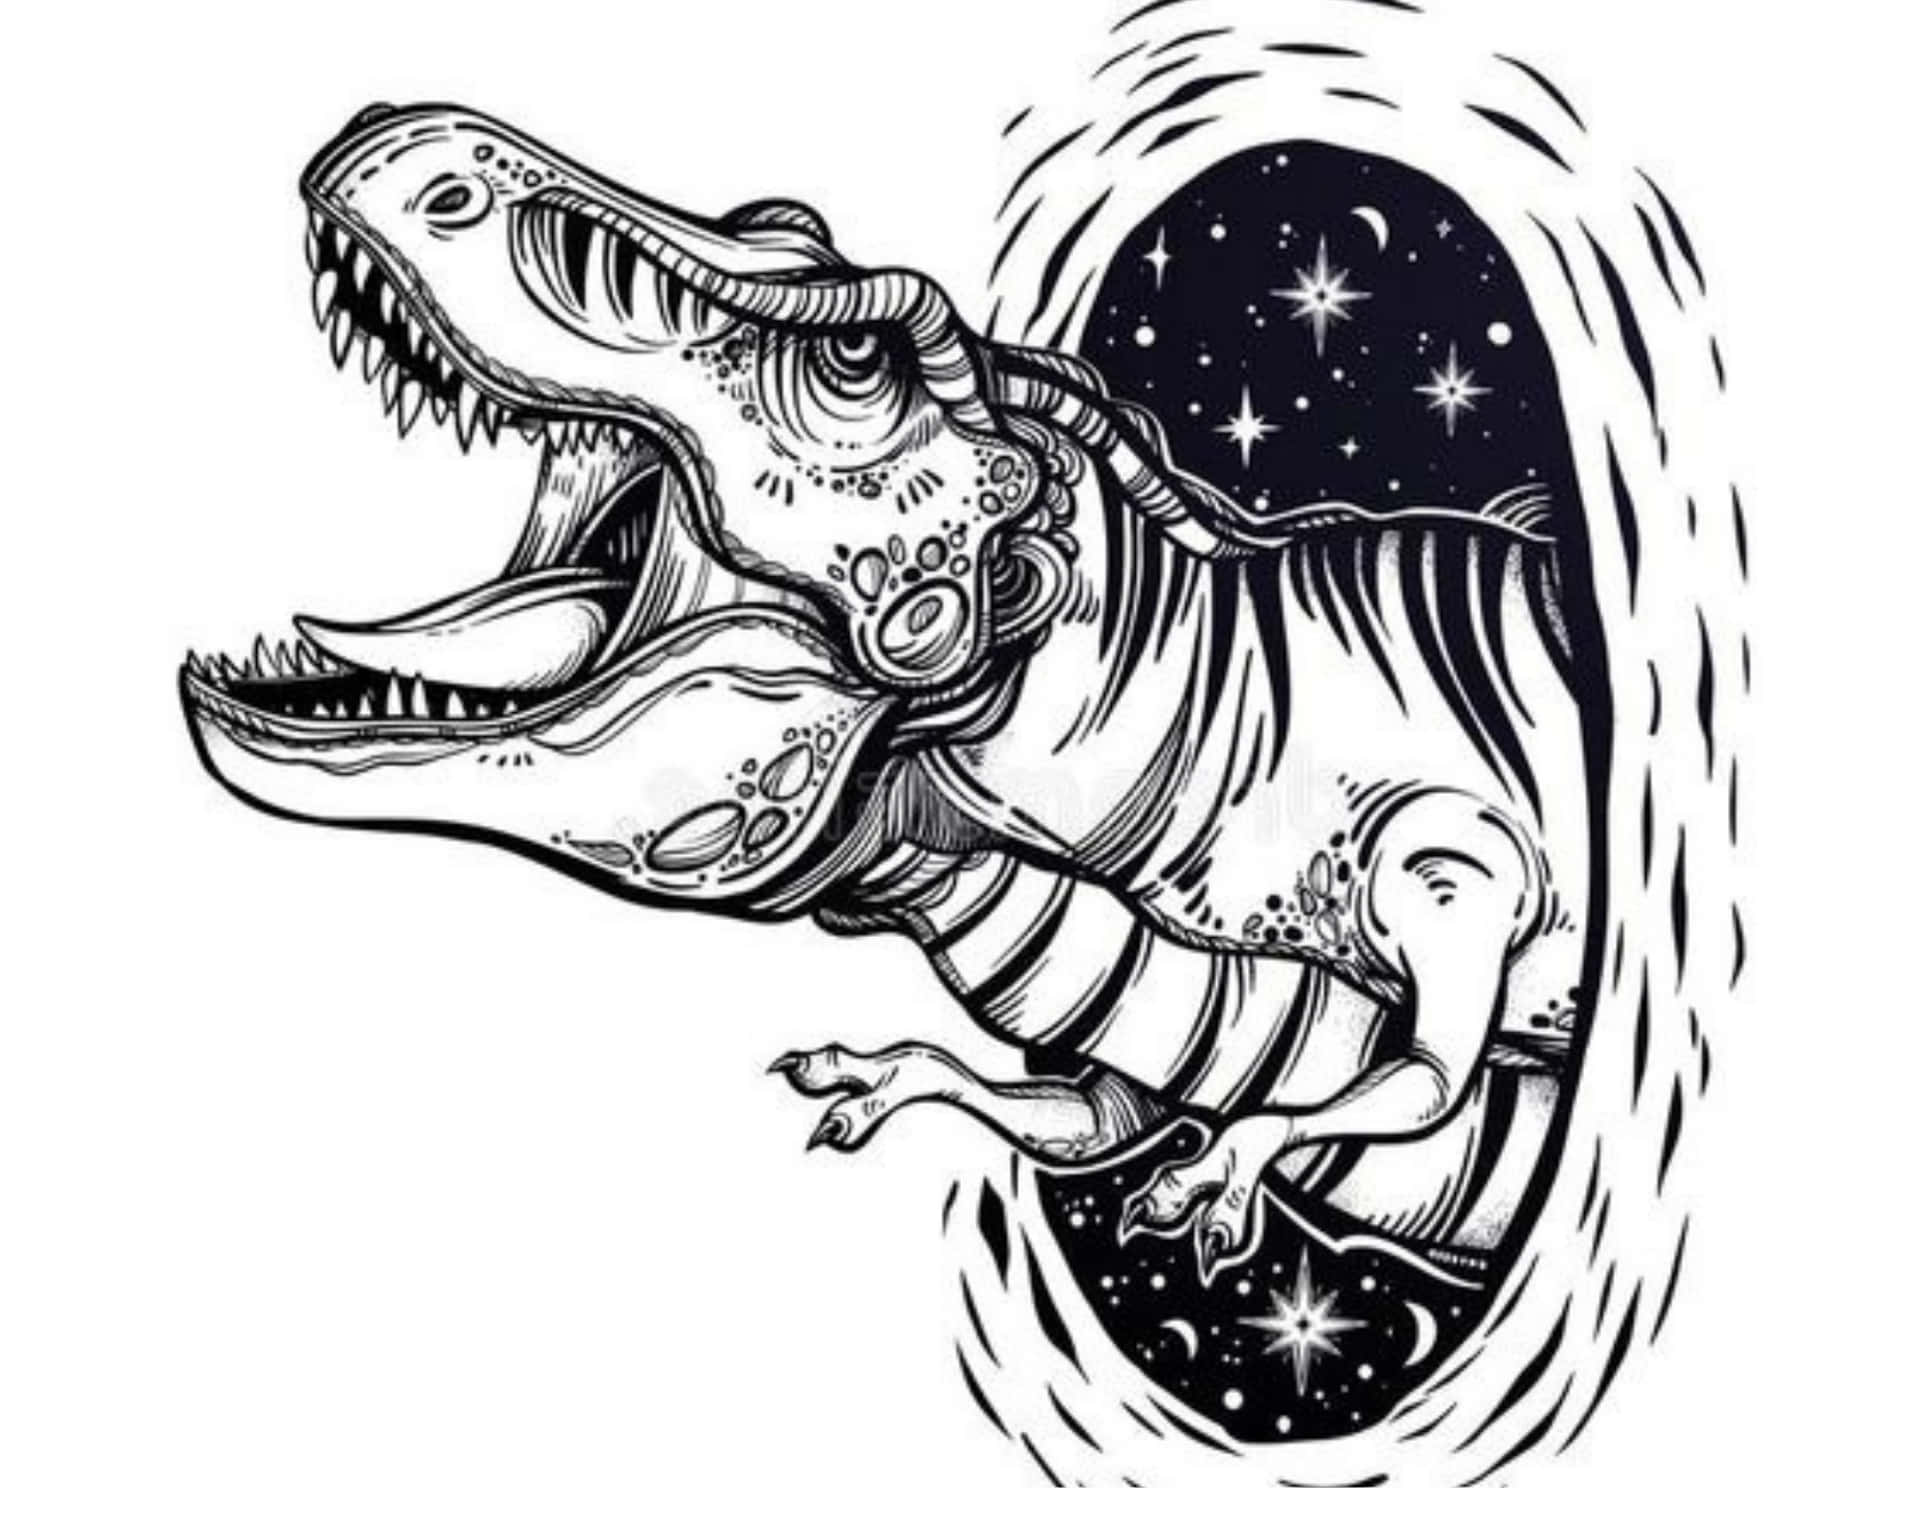 Endetaljerad Teckning Av En Vrålande T-rex Dinosaurie.